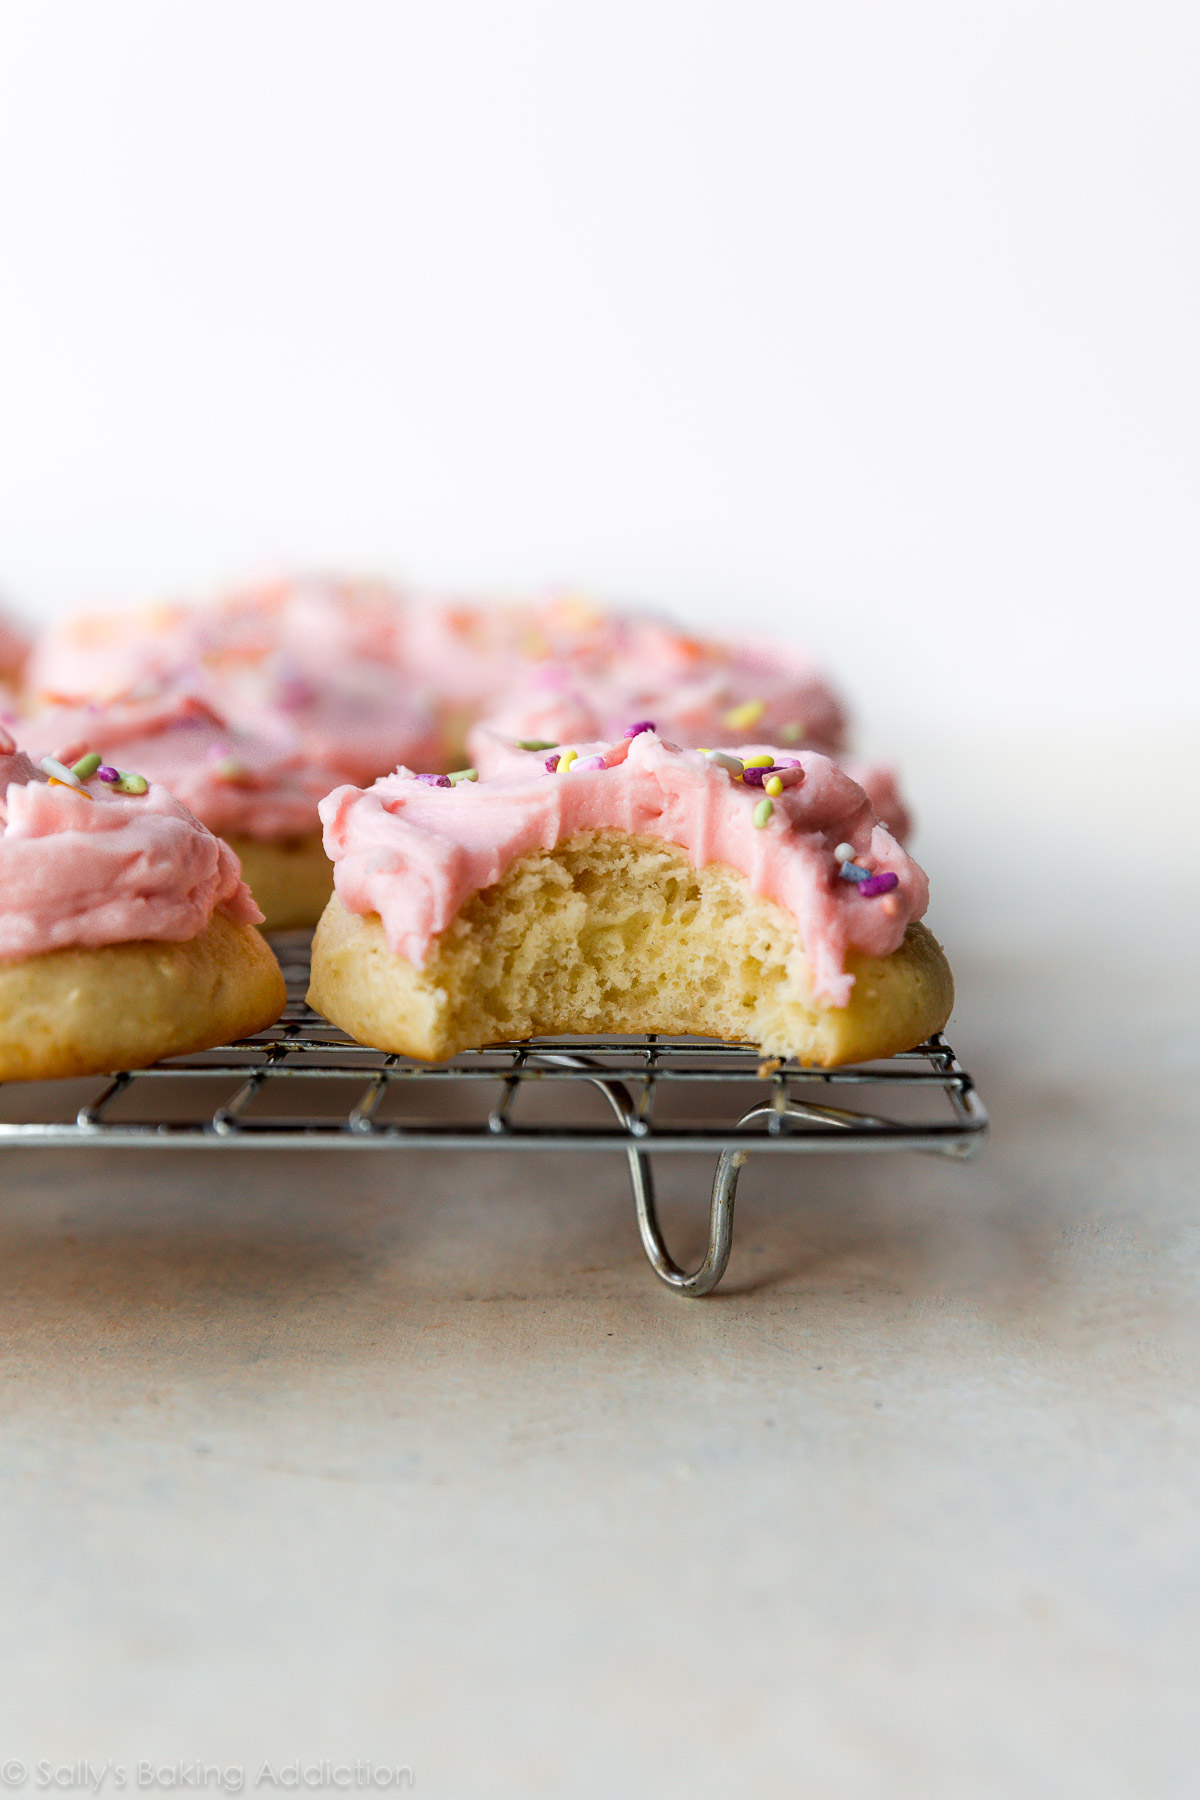 Ces biscuits sucrés en forme de gâteau sont garnis de crème au beurre rose pastel crémeuse et de paillettes. La crème sure est l'ingrédient secret! Recette sur sallysbakingaddiction.com